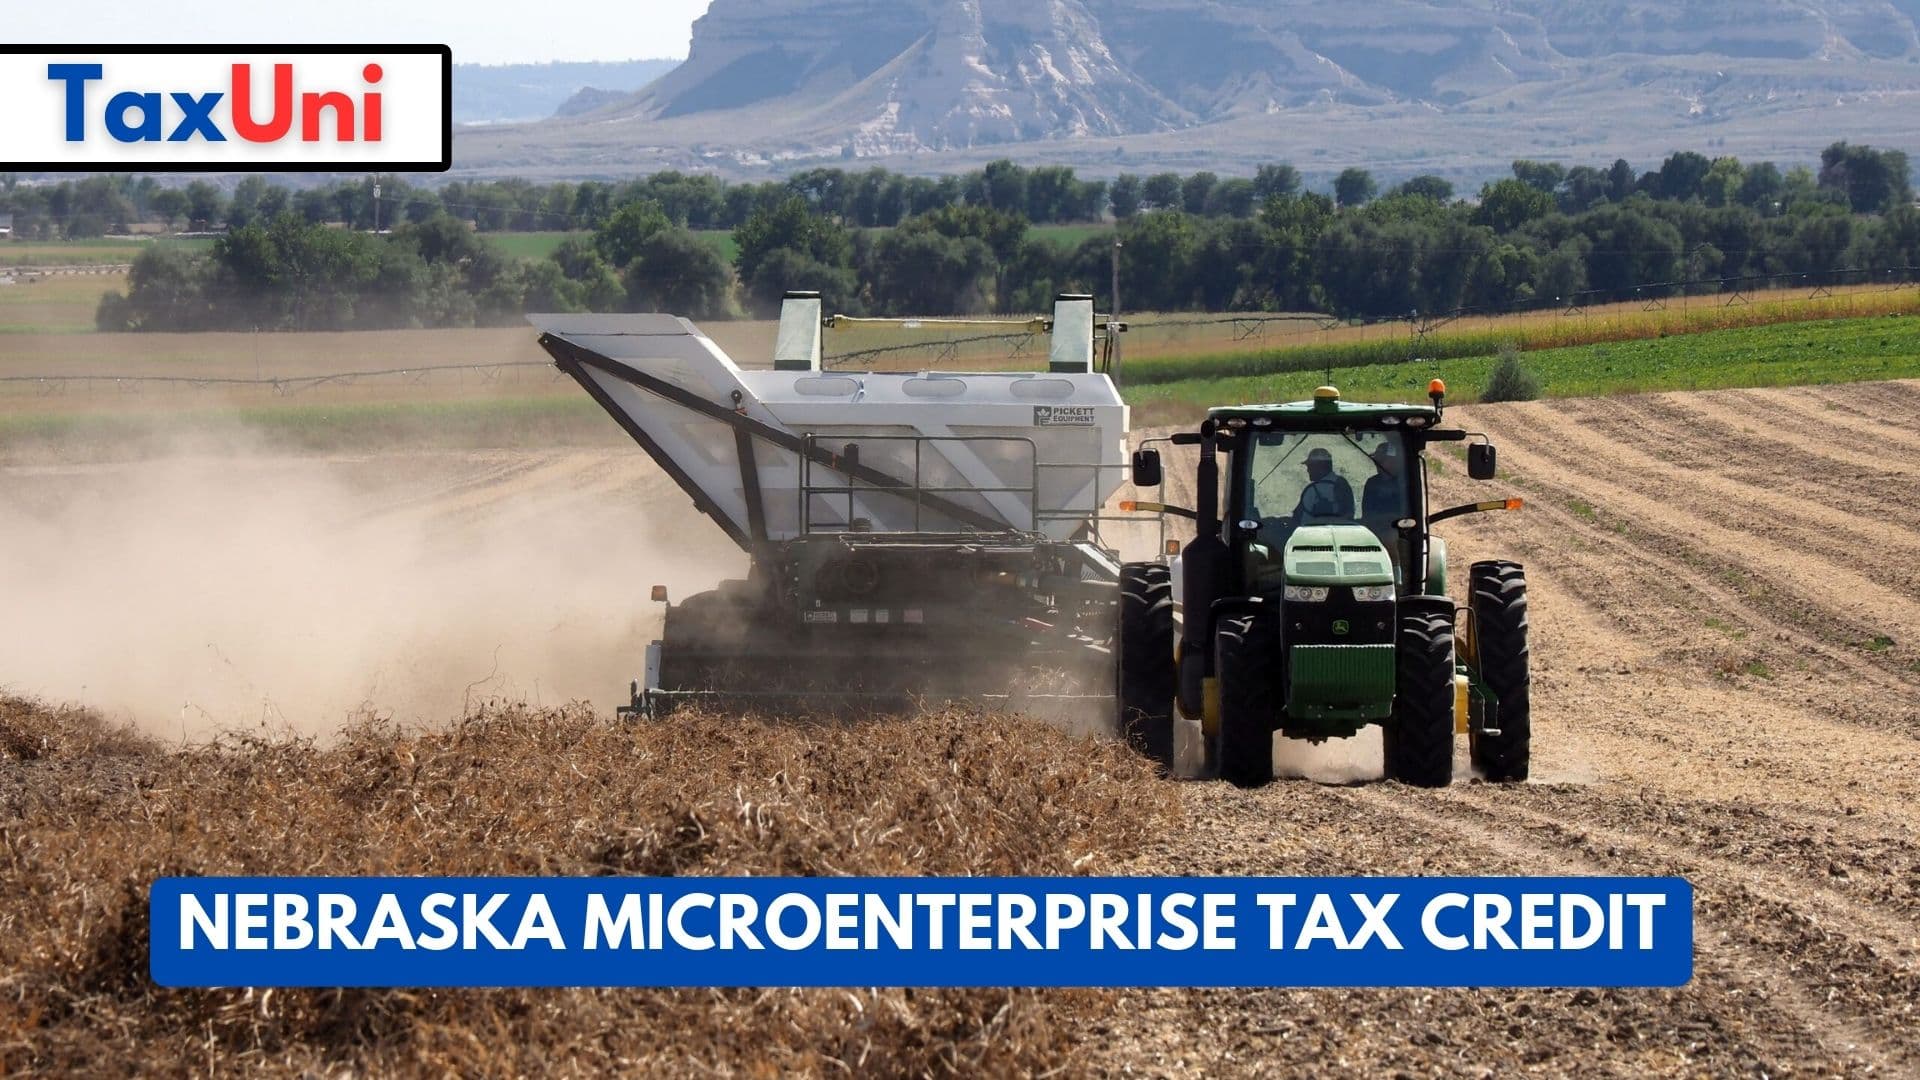 Nebraska Microenterprise Tax Credit